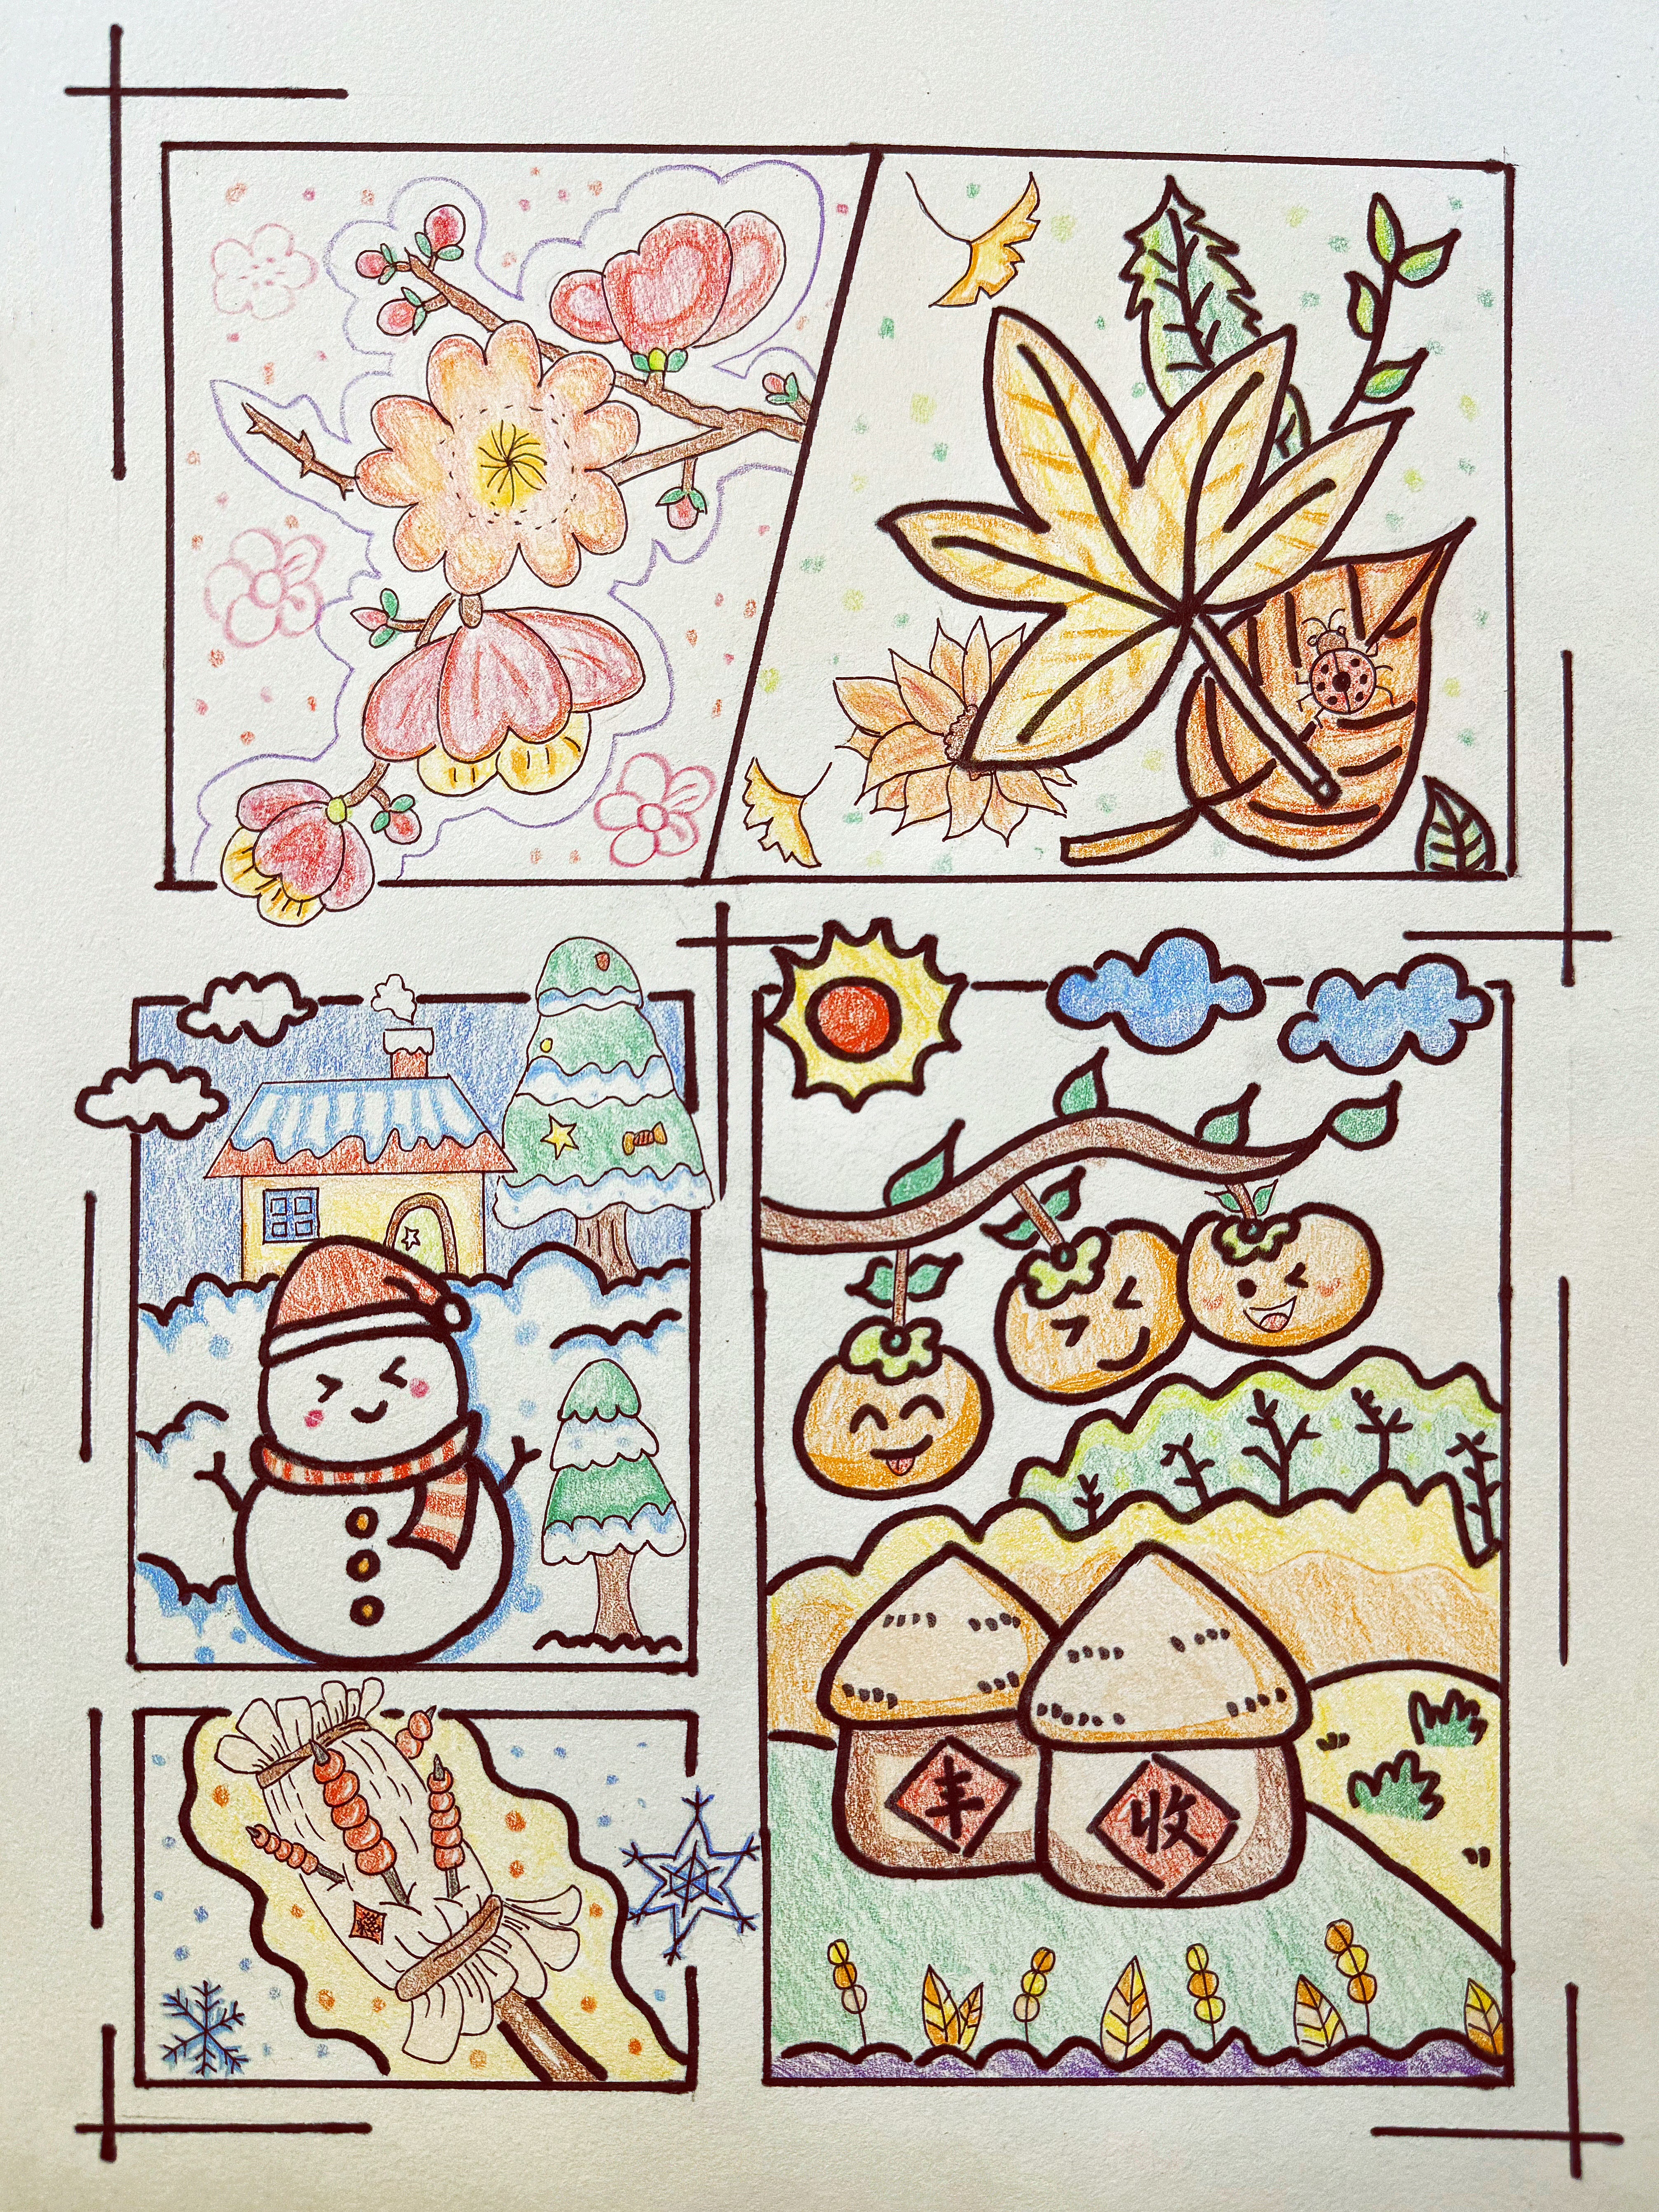 该组画描绘了多个与秋冬季节相关的元素，不仅代表了秋冬的典型特征，还体现了季节变化和自然美感，传递着作者对季节的独特感受。